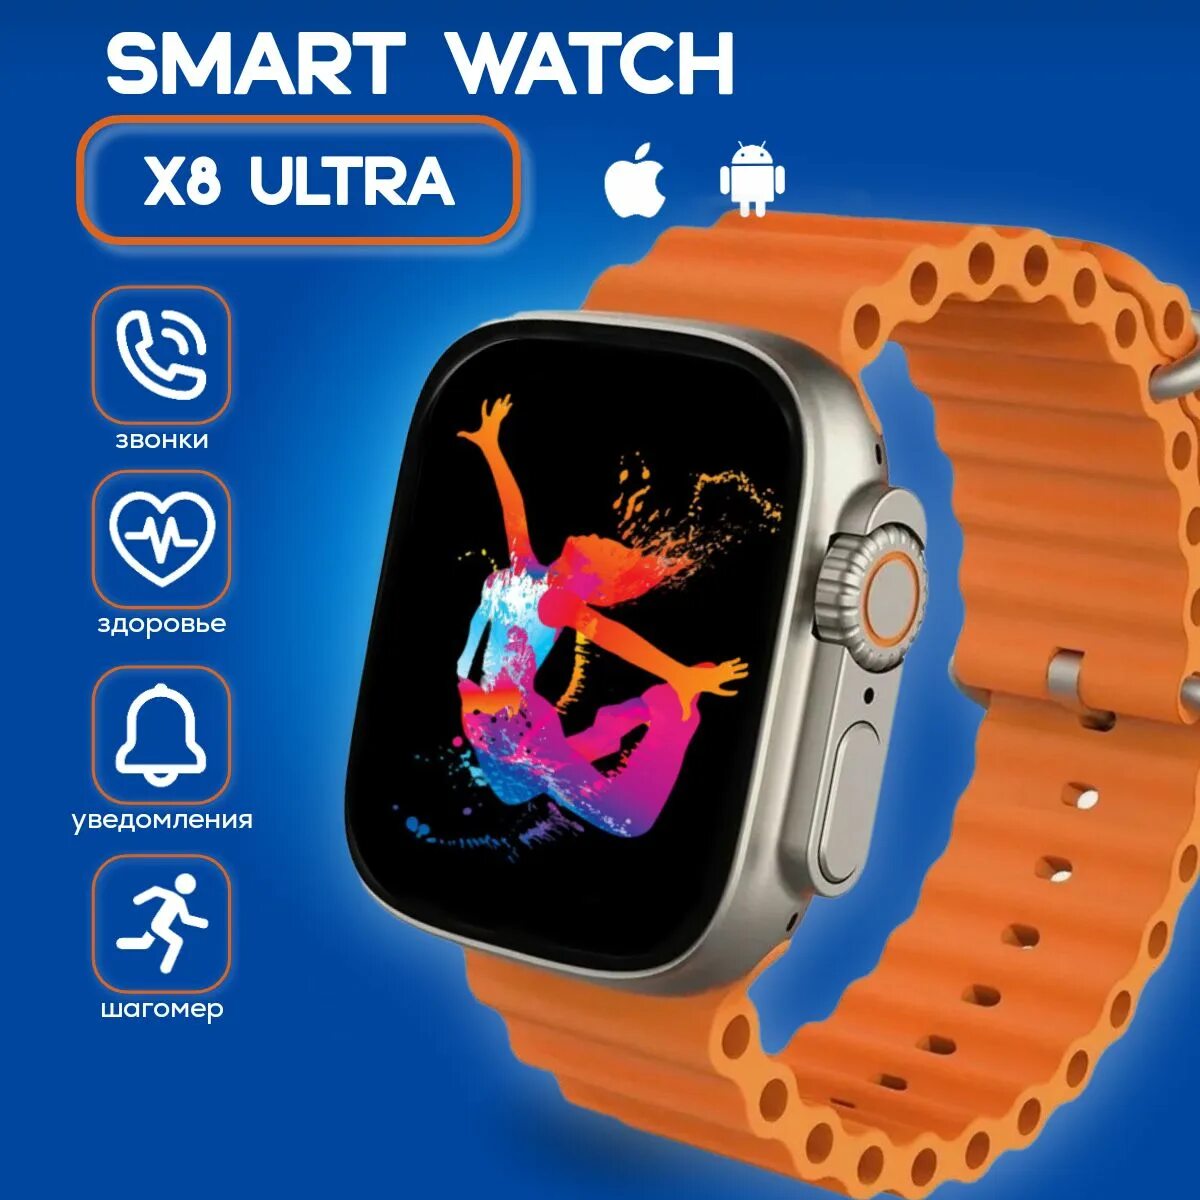 X8 Ultra Smart watch. SMARTWATCH 8 Ultra. Смарт часы x8 Plus Ultra. Умные часы x8 Ultra смарт часы. Смарт часы x9 ultra 2